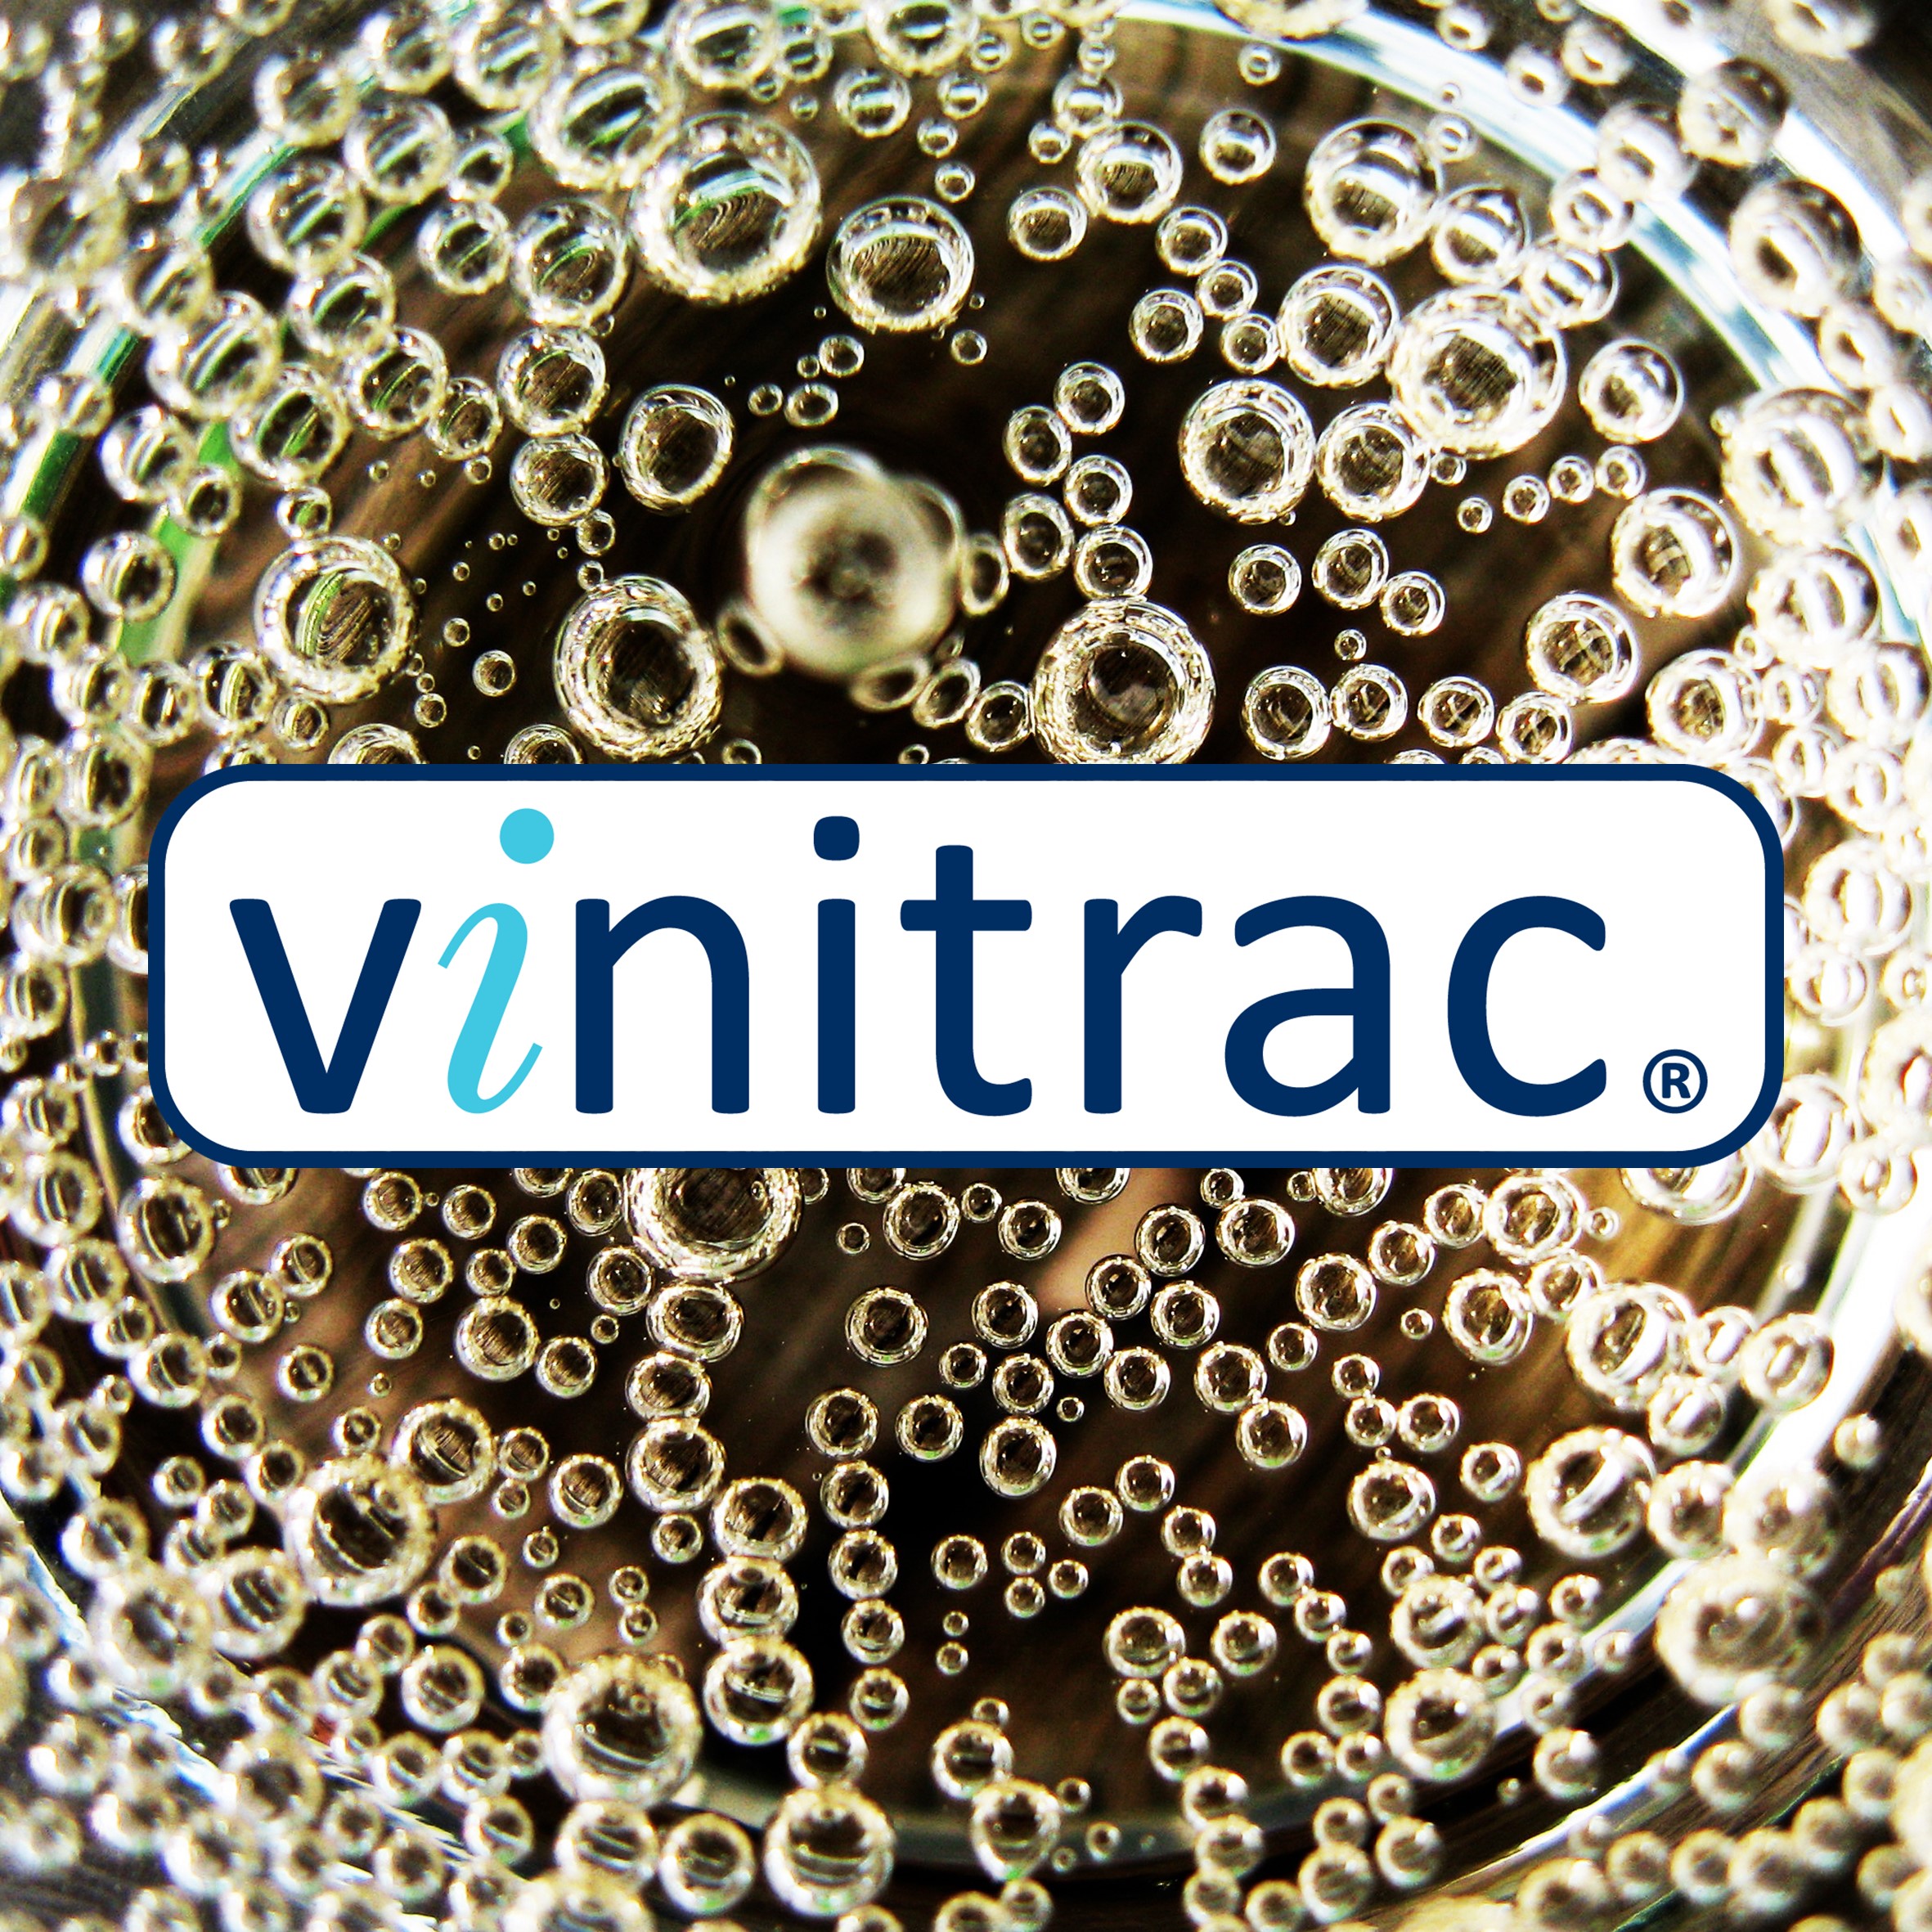 Vinitrac Sparkling - Vinitrac® Sparkling standard questions